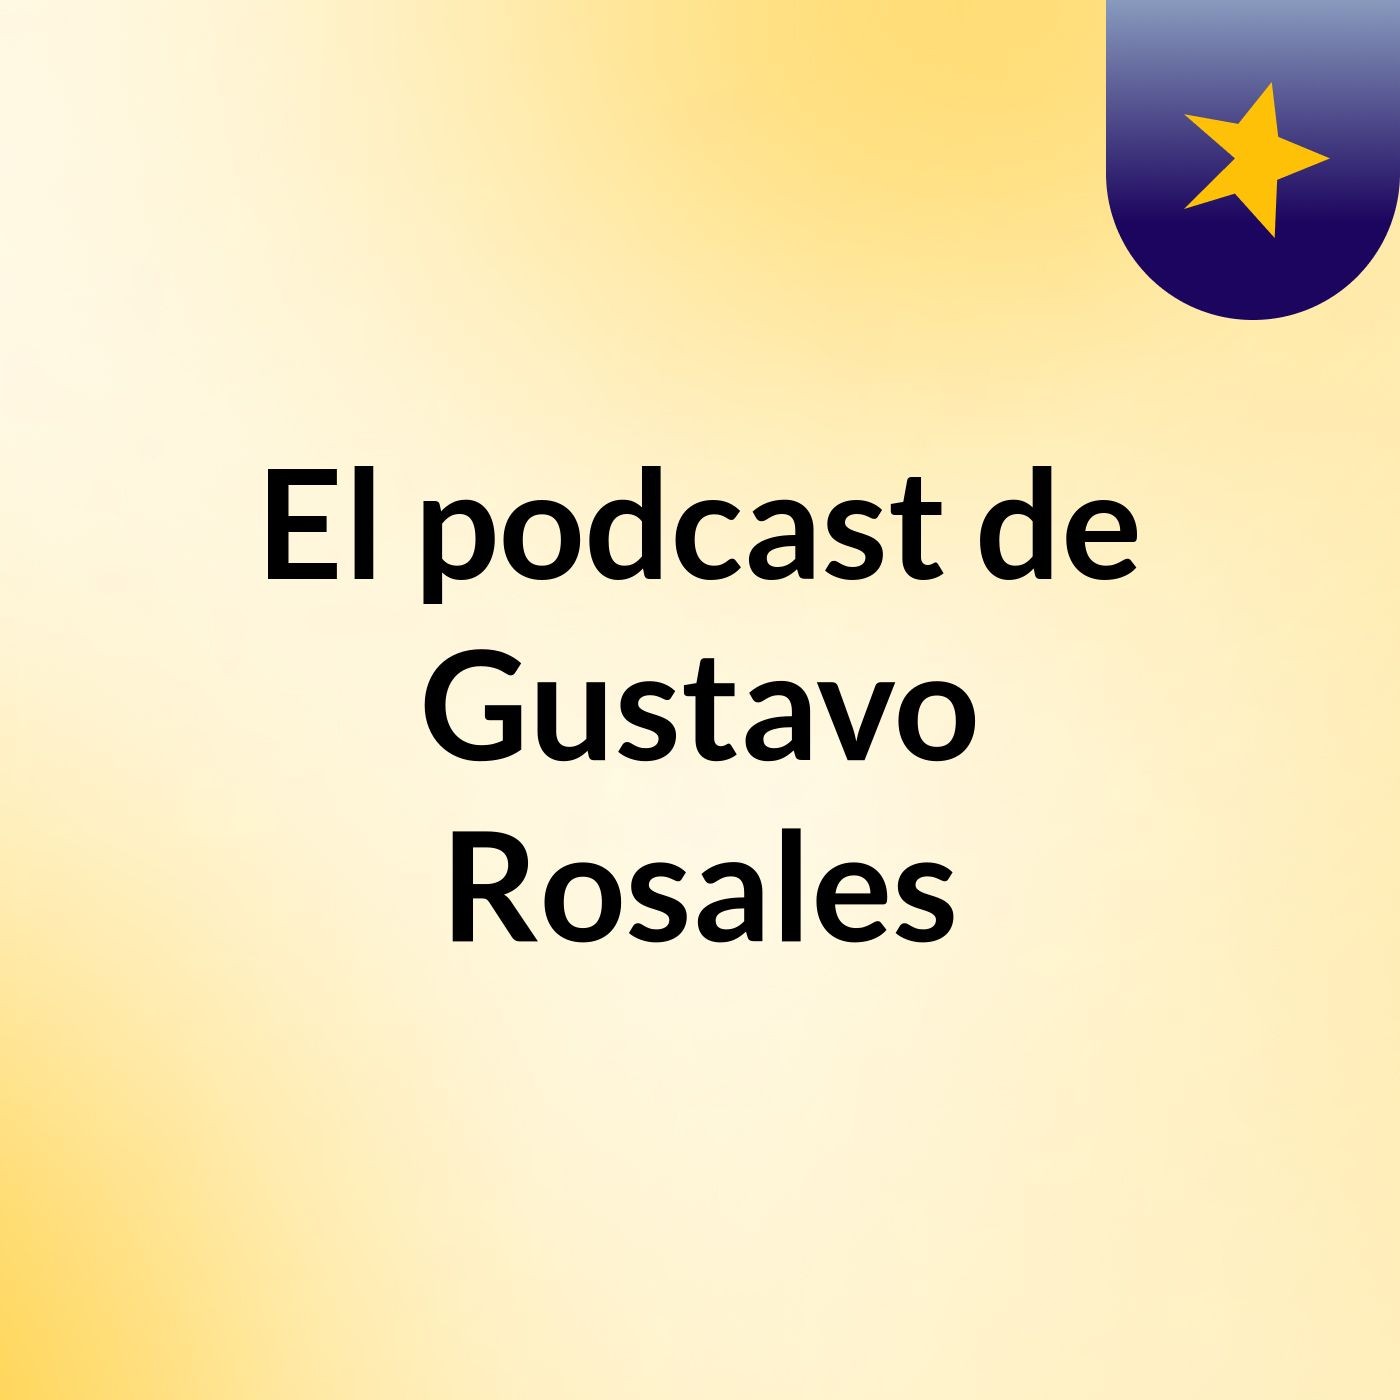 El podcast de Gustavo Rosales